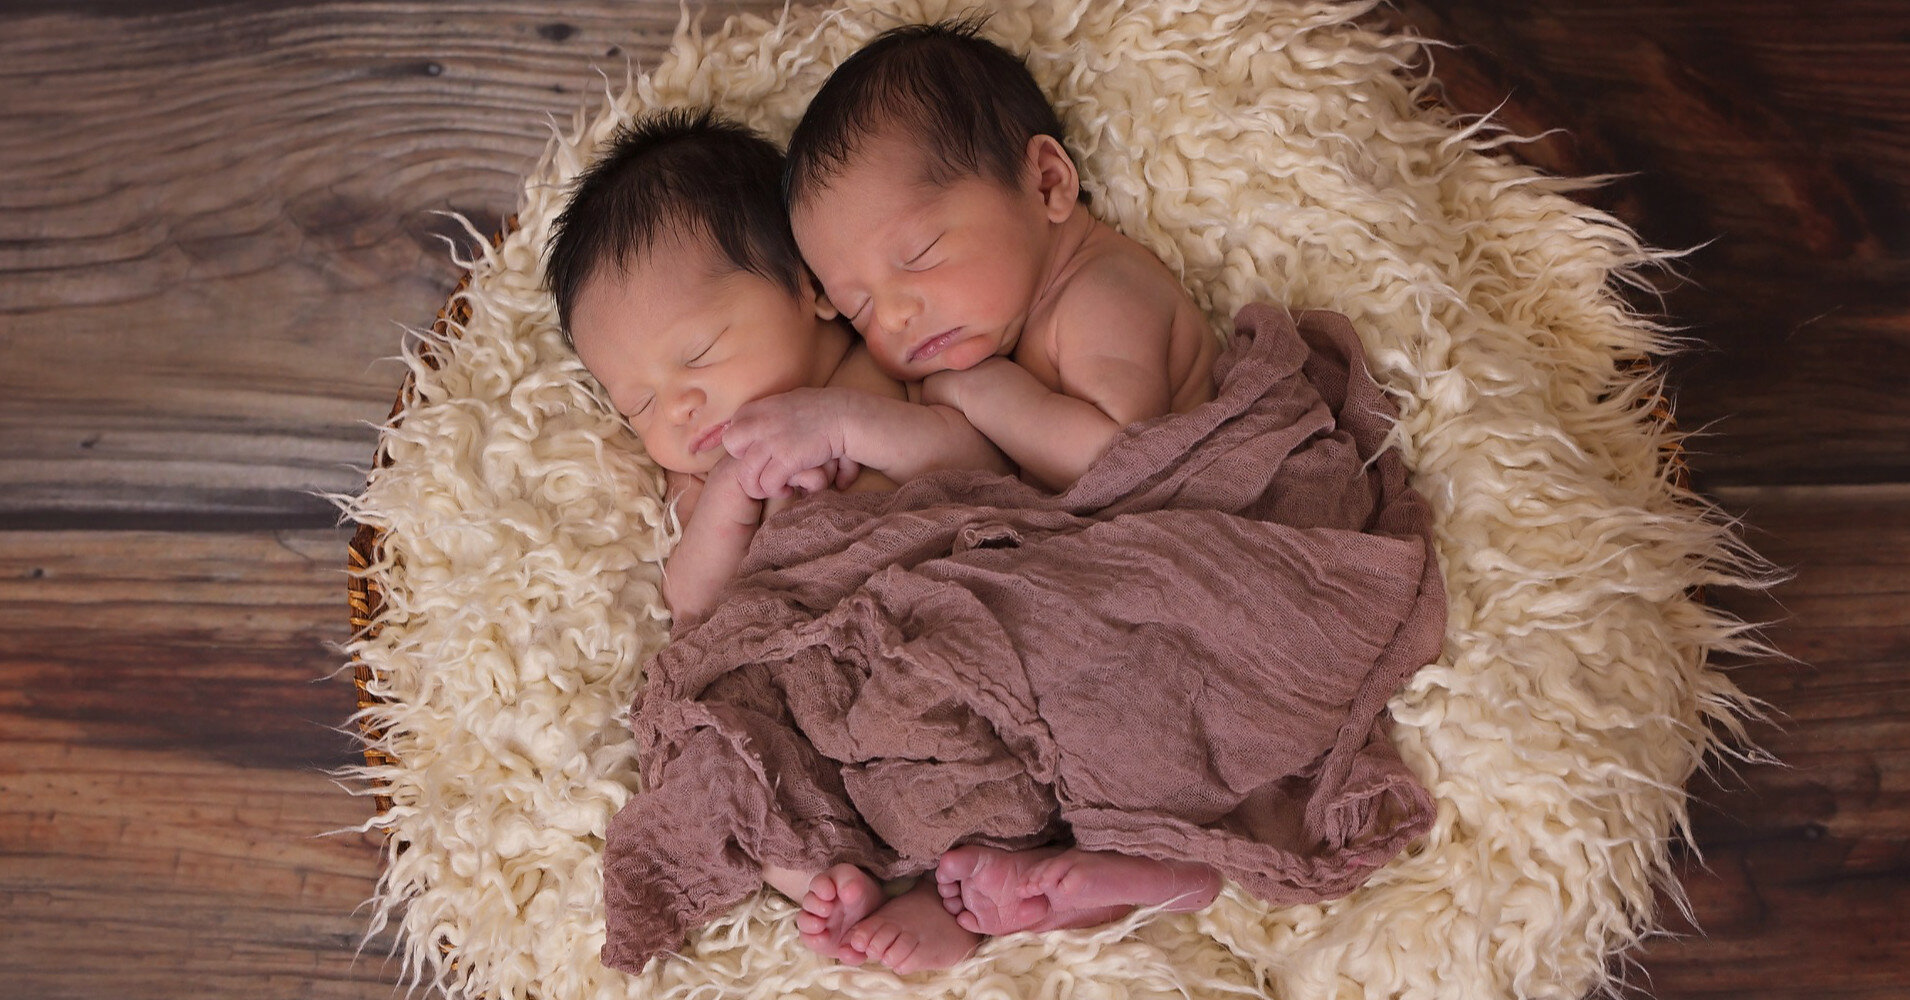 Рождение 10 близнецов обернулось скандалом